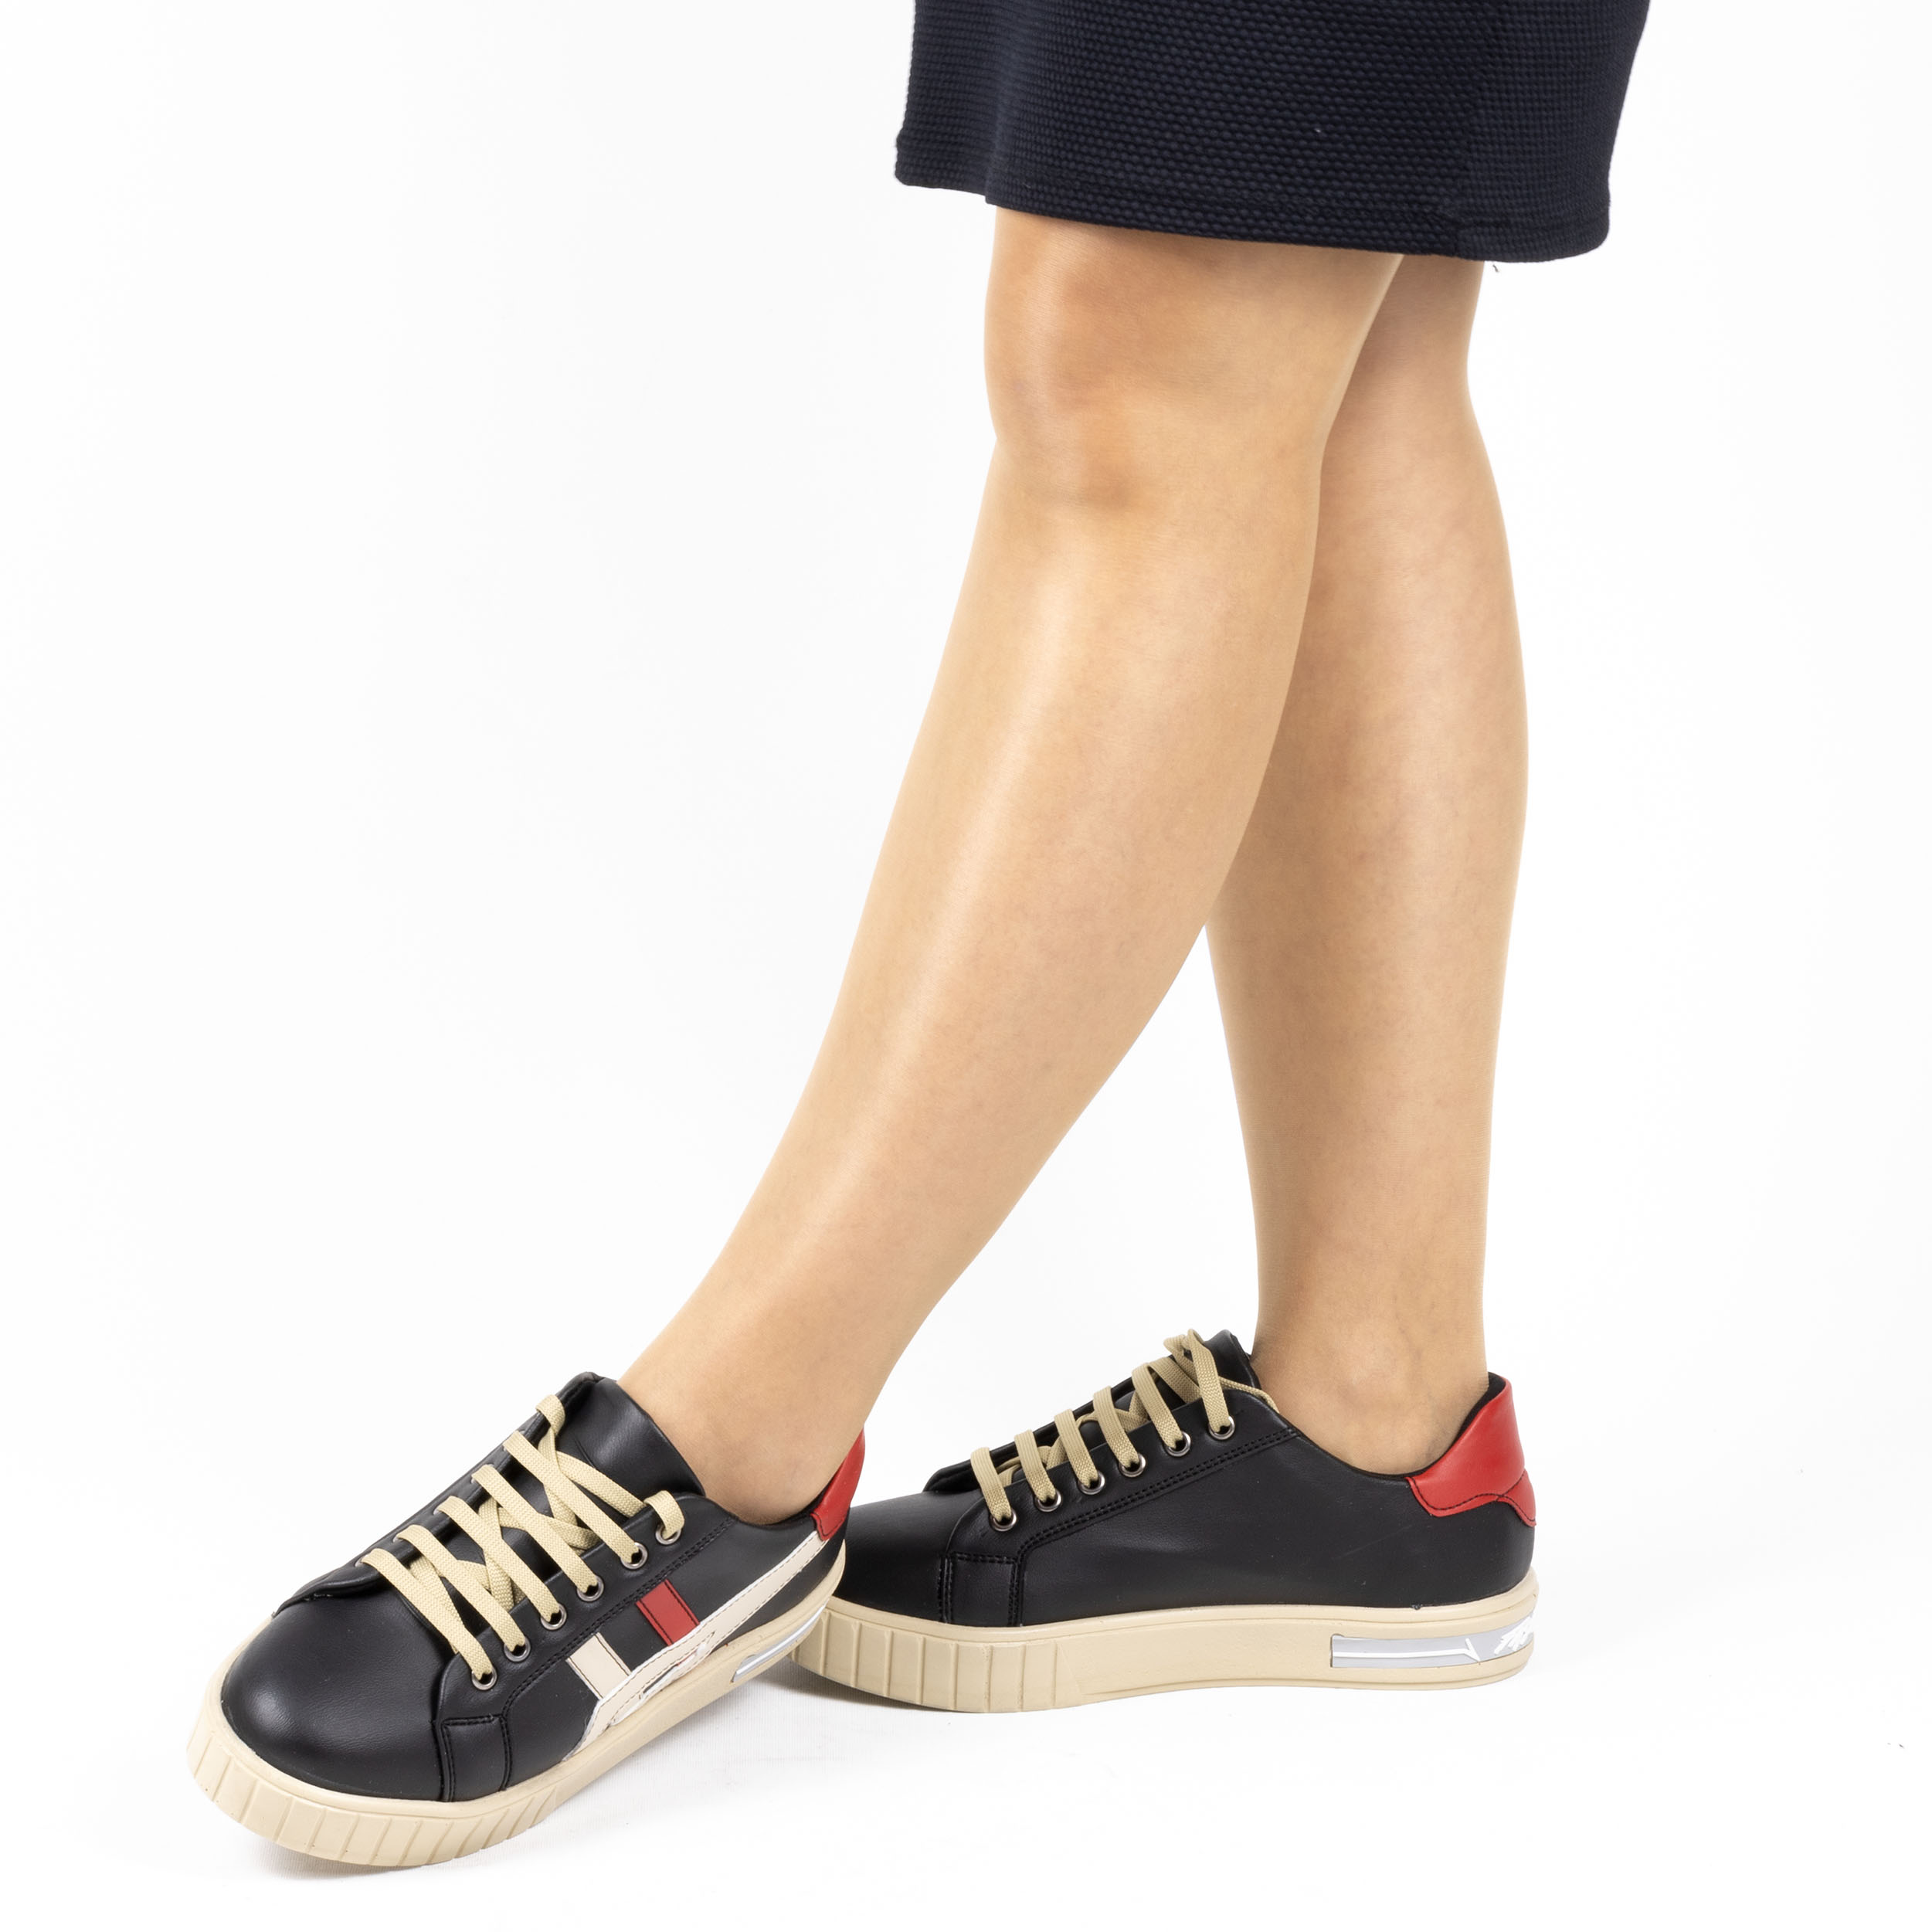 Kadın Günlük Siyah Bağcıklı Hafif Düz Tabanlı Spor Ayakkabı, Renk: Siyah, Beden: 36